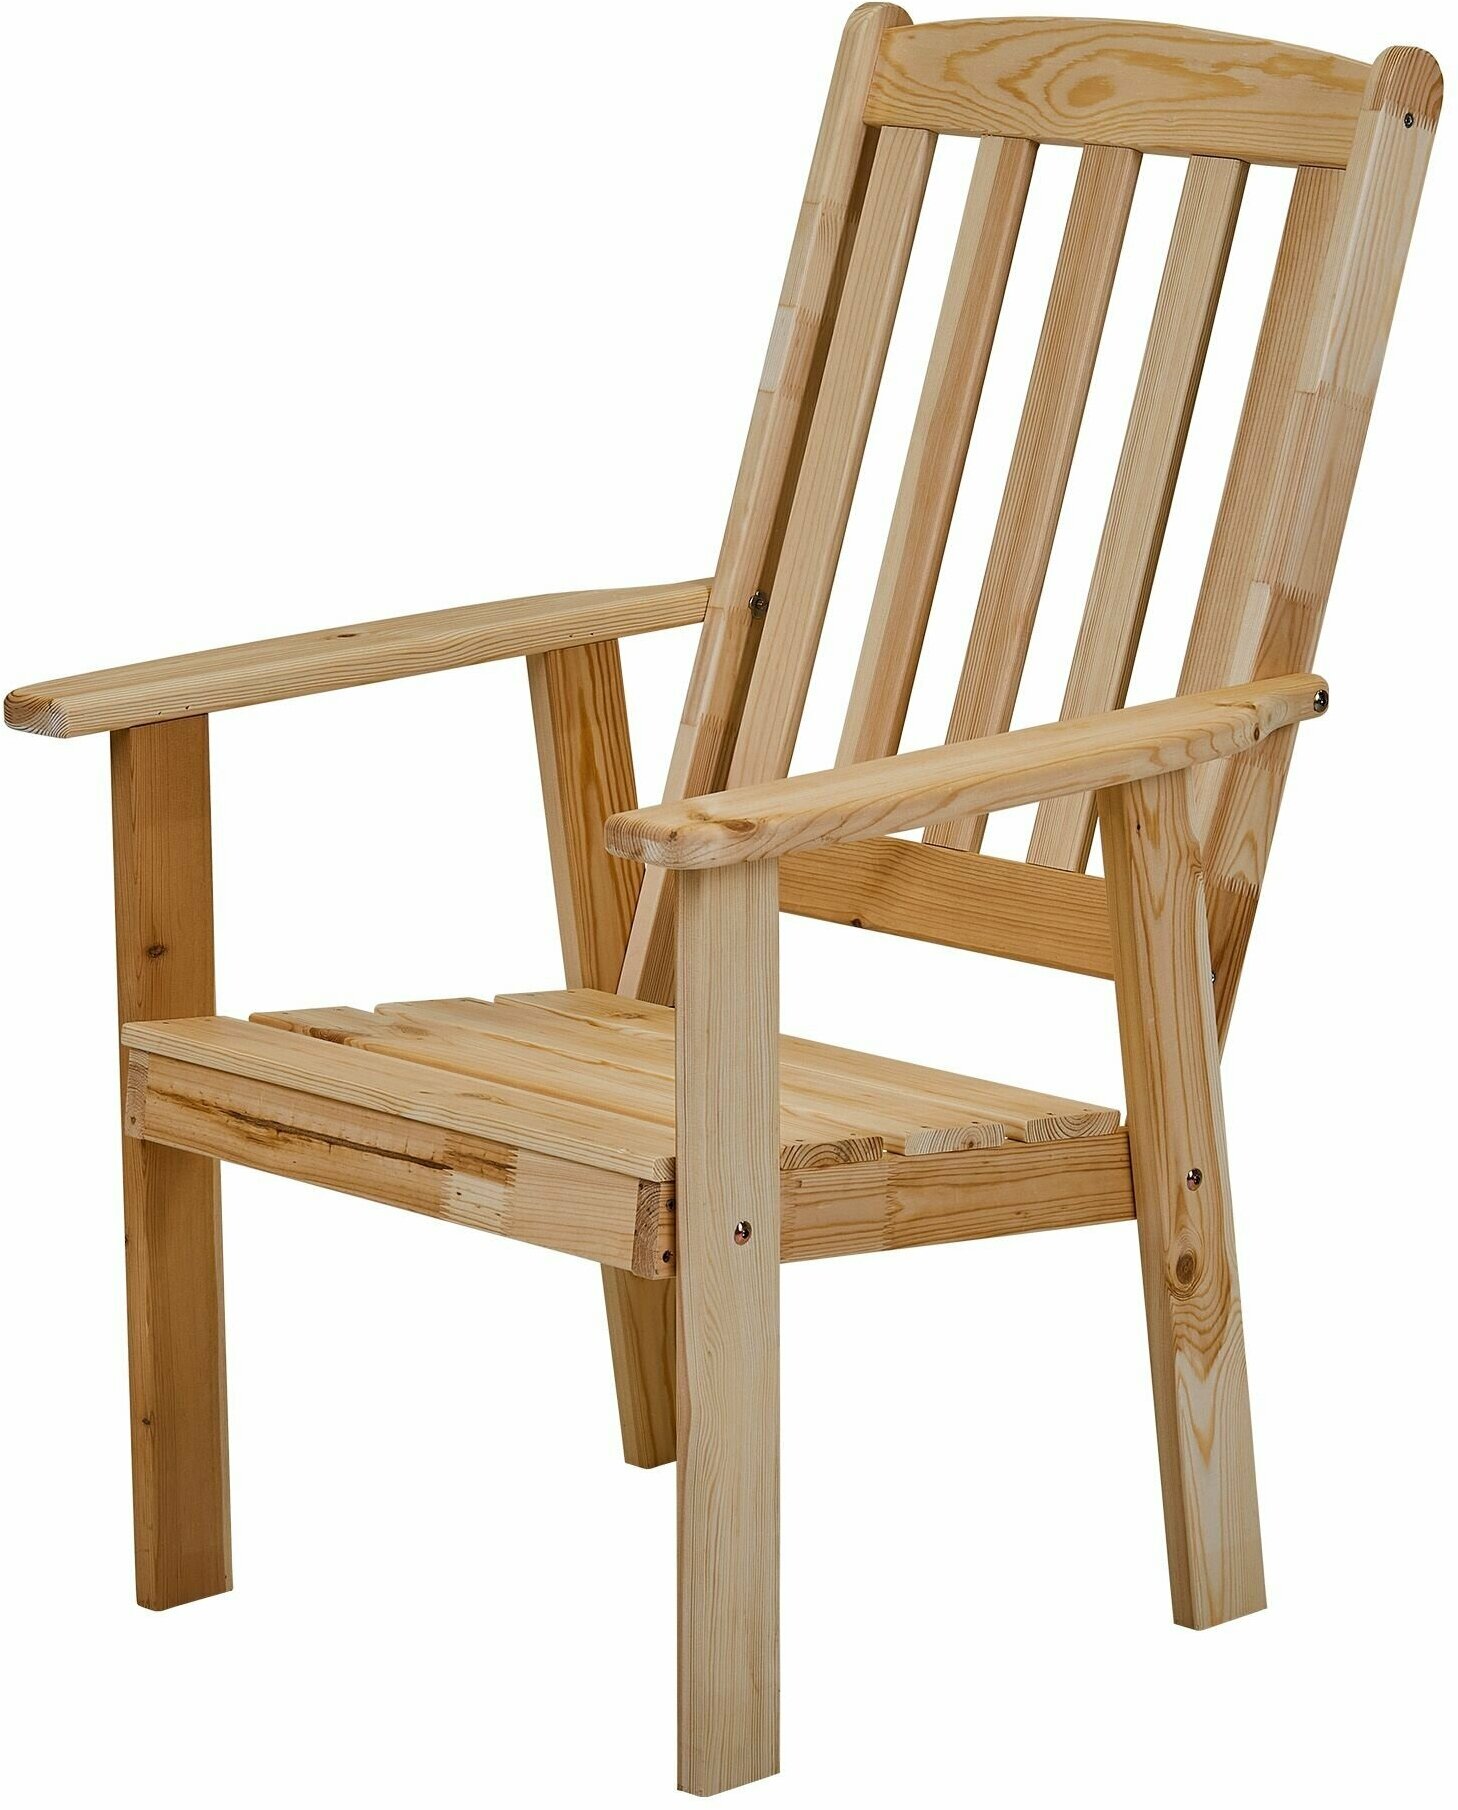 Кресло деревянное для сада и дачи с высокой спинкой, розенборг